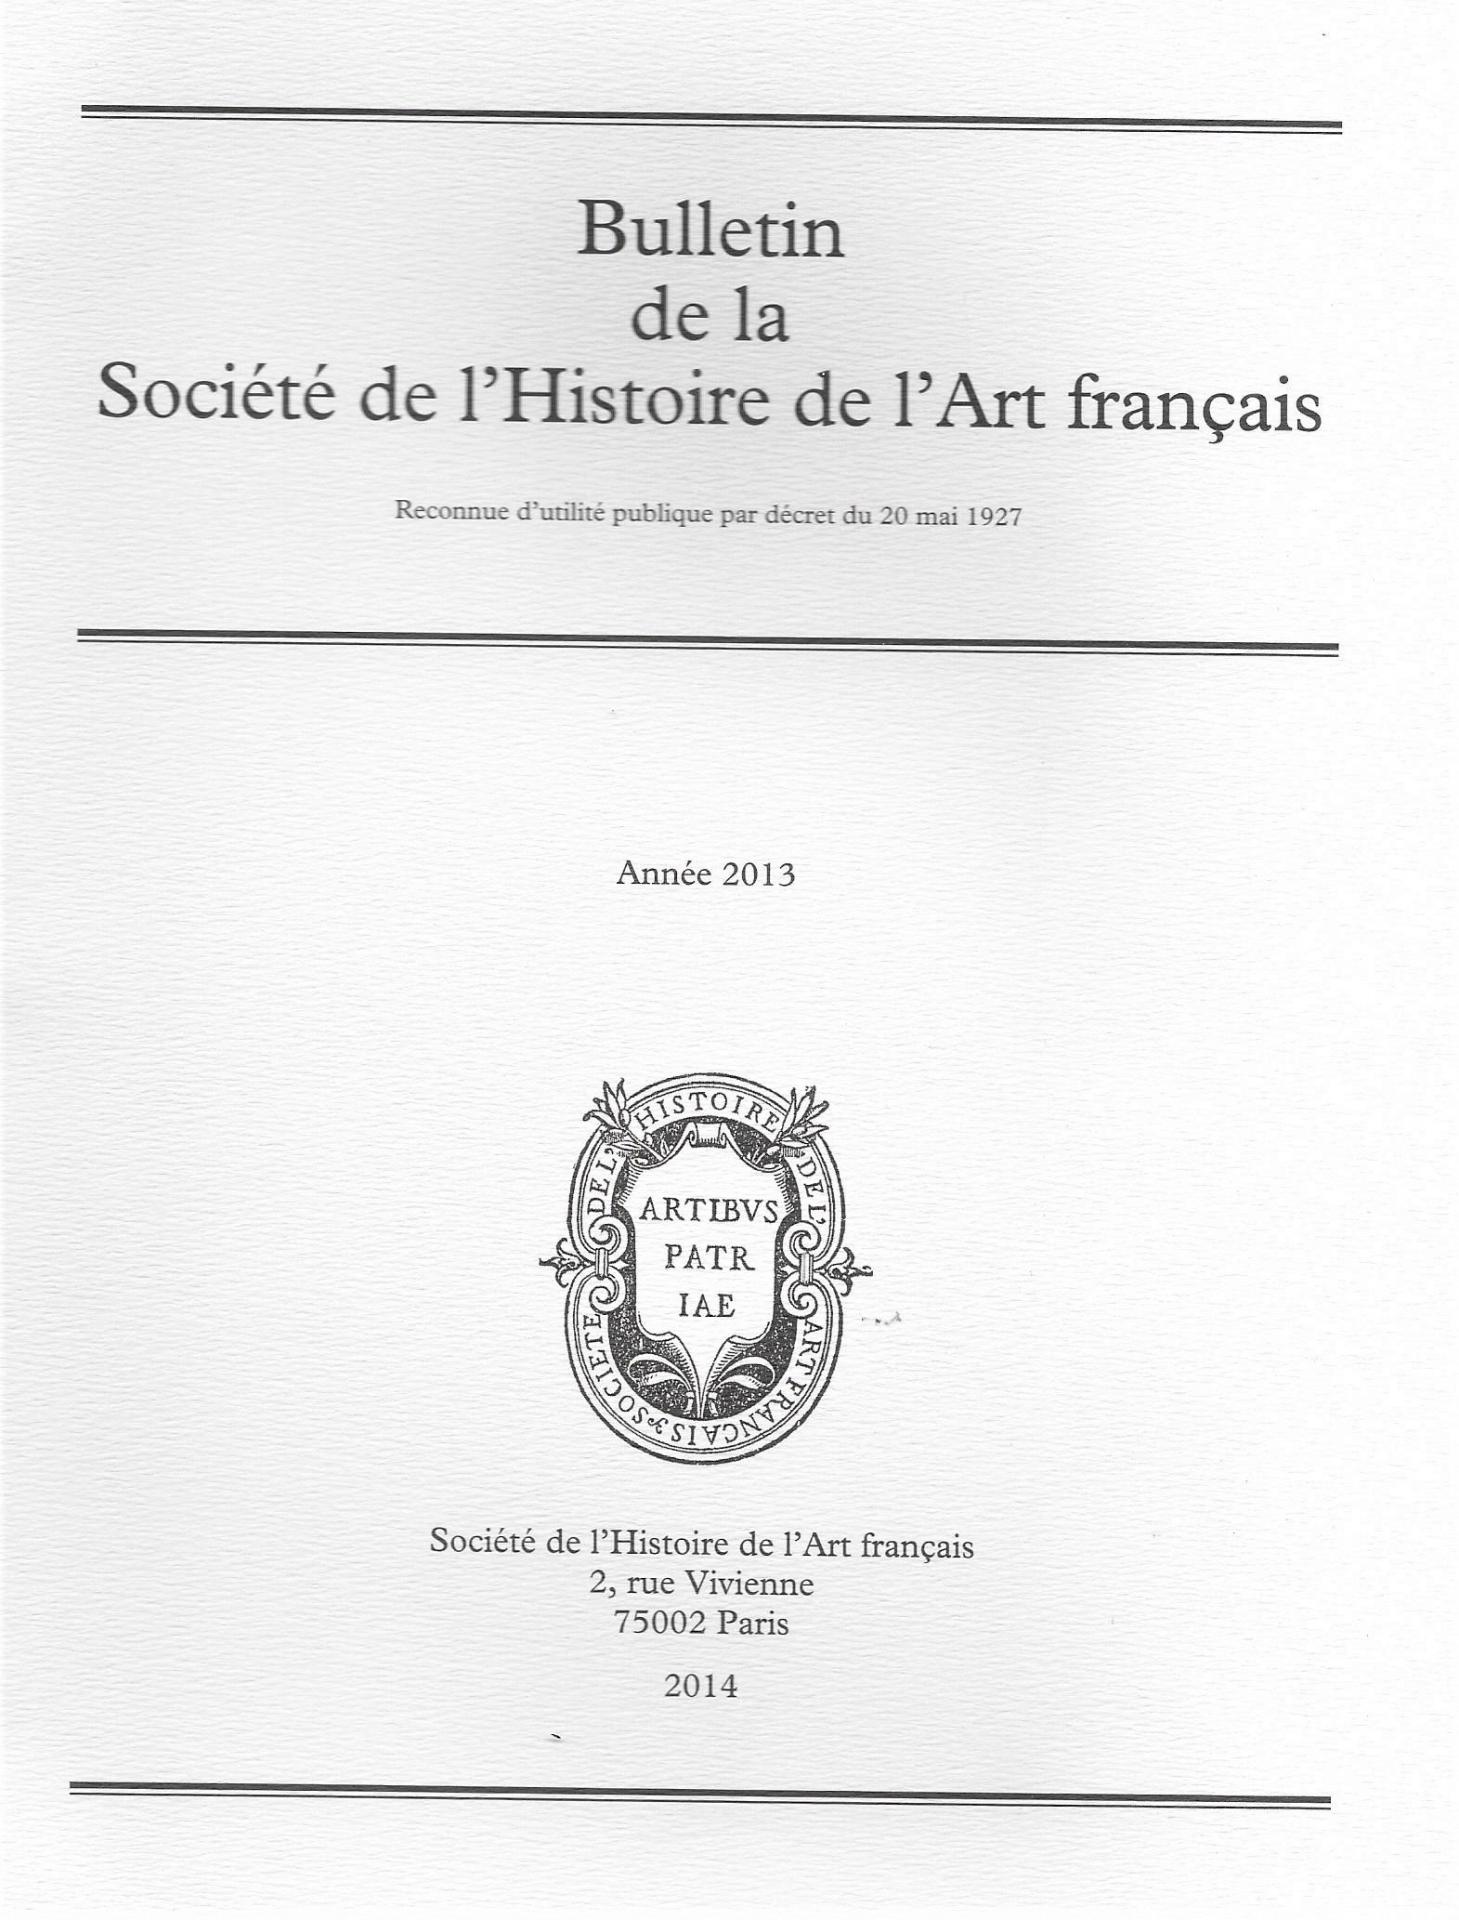 Bulletin Société de l'Histoire de l'Art francais 2013 (2014)